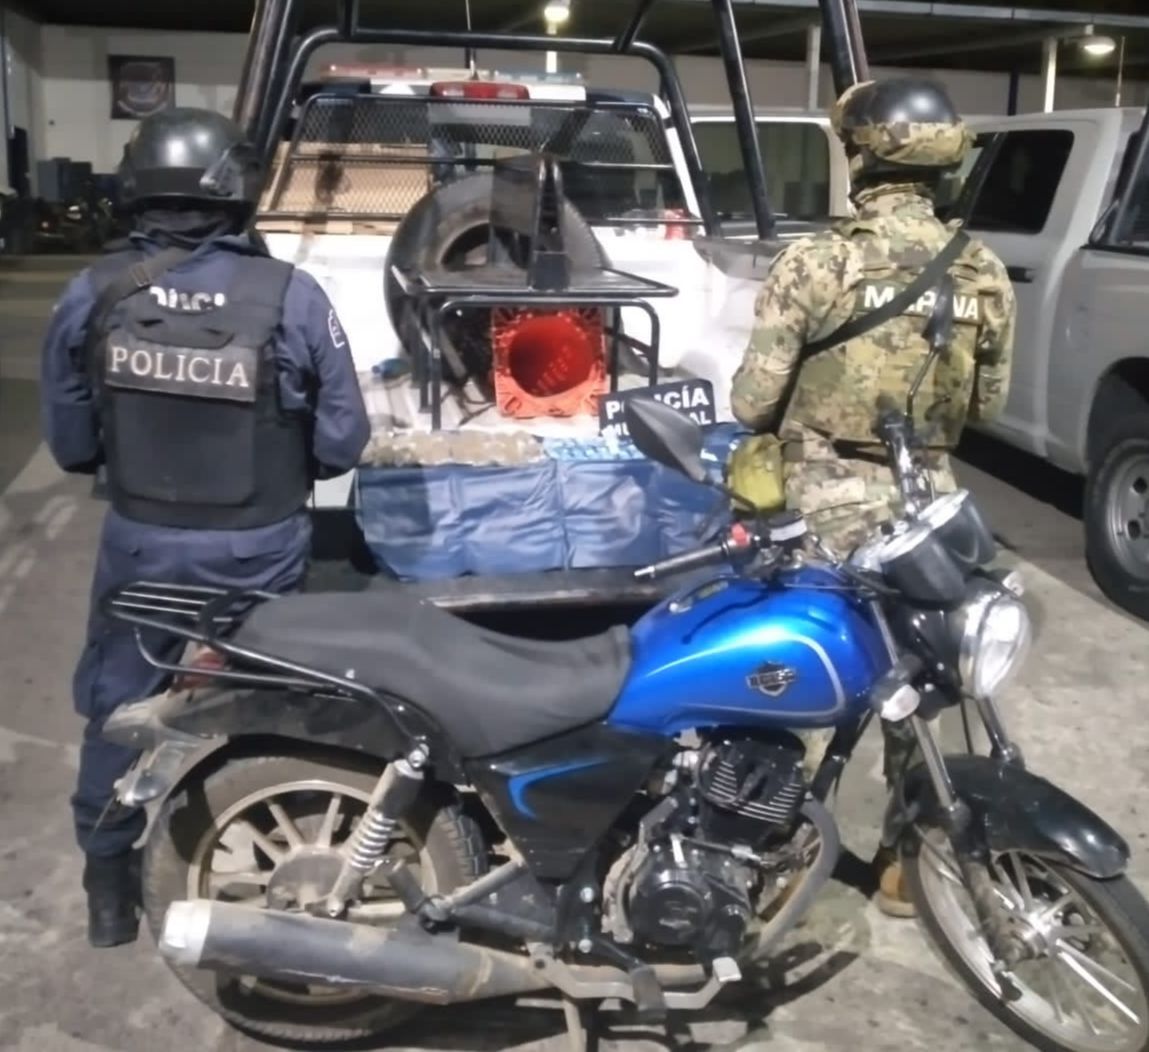 Aseguran una motocicleta y probable droga en Puerto Marqués